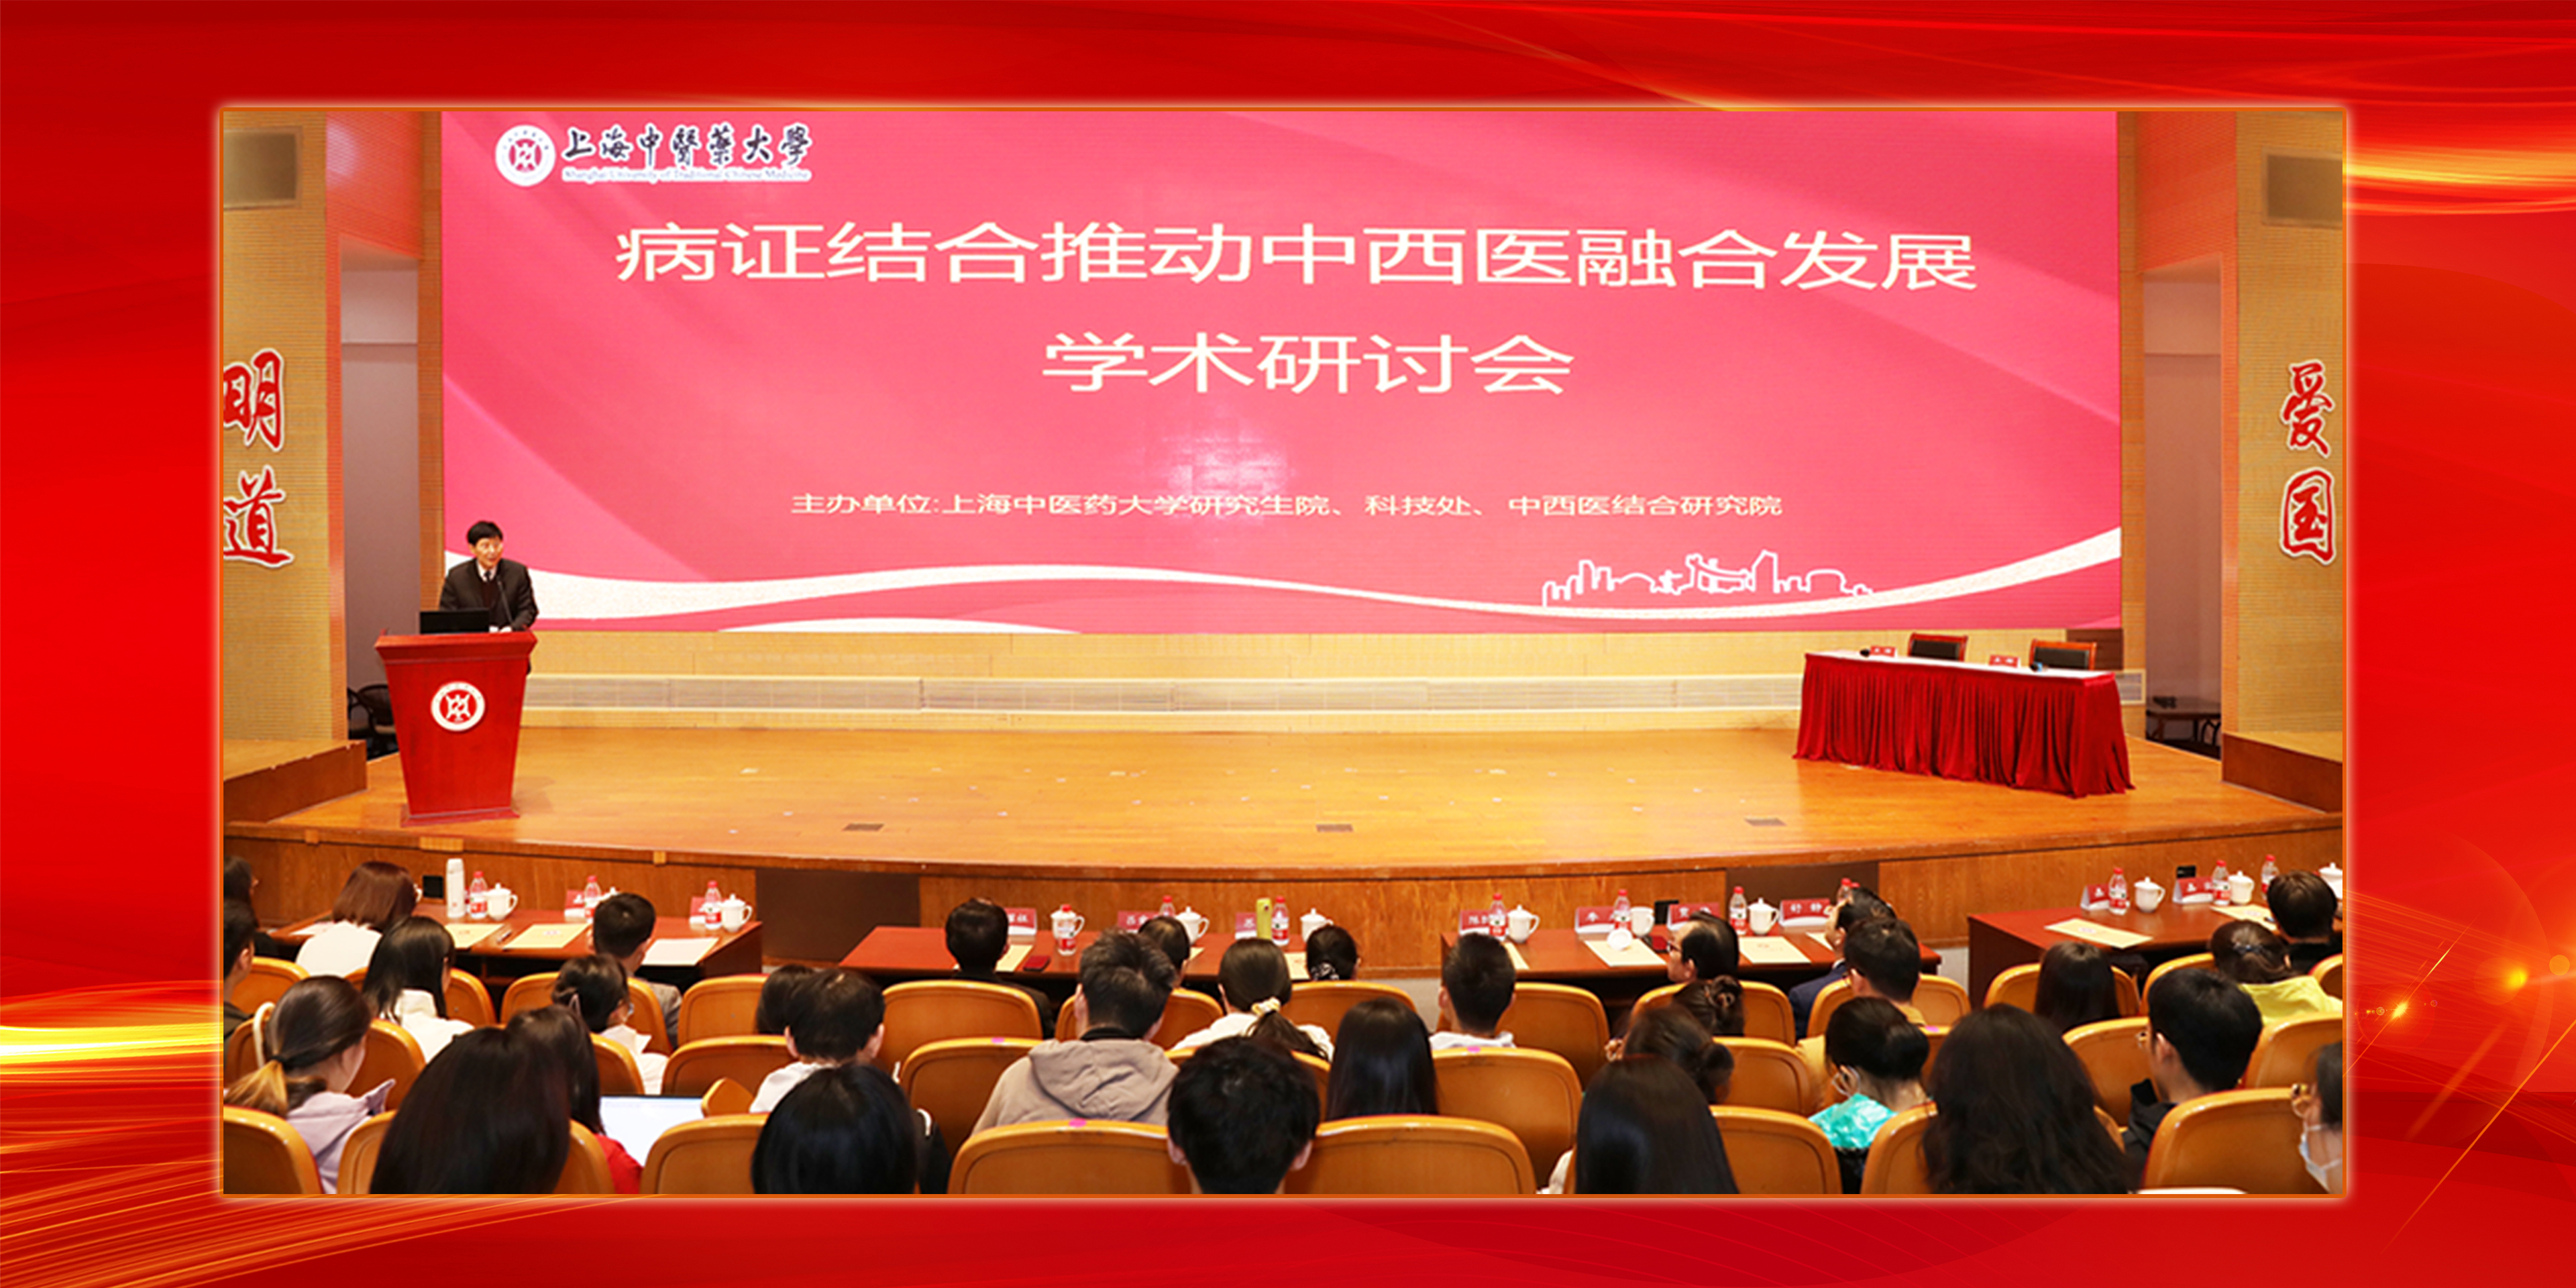 上海中医药大学举办“病证结合推动中西医融合发展”学术研讨会